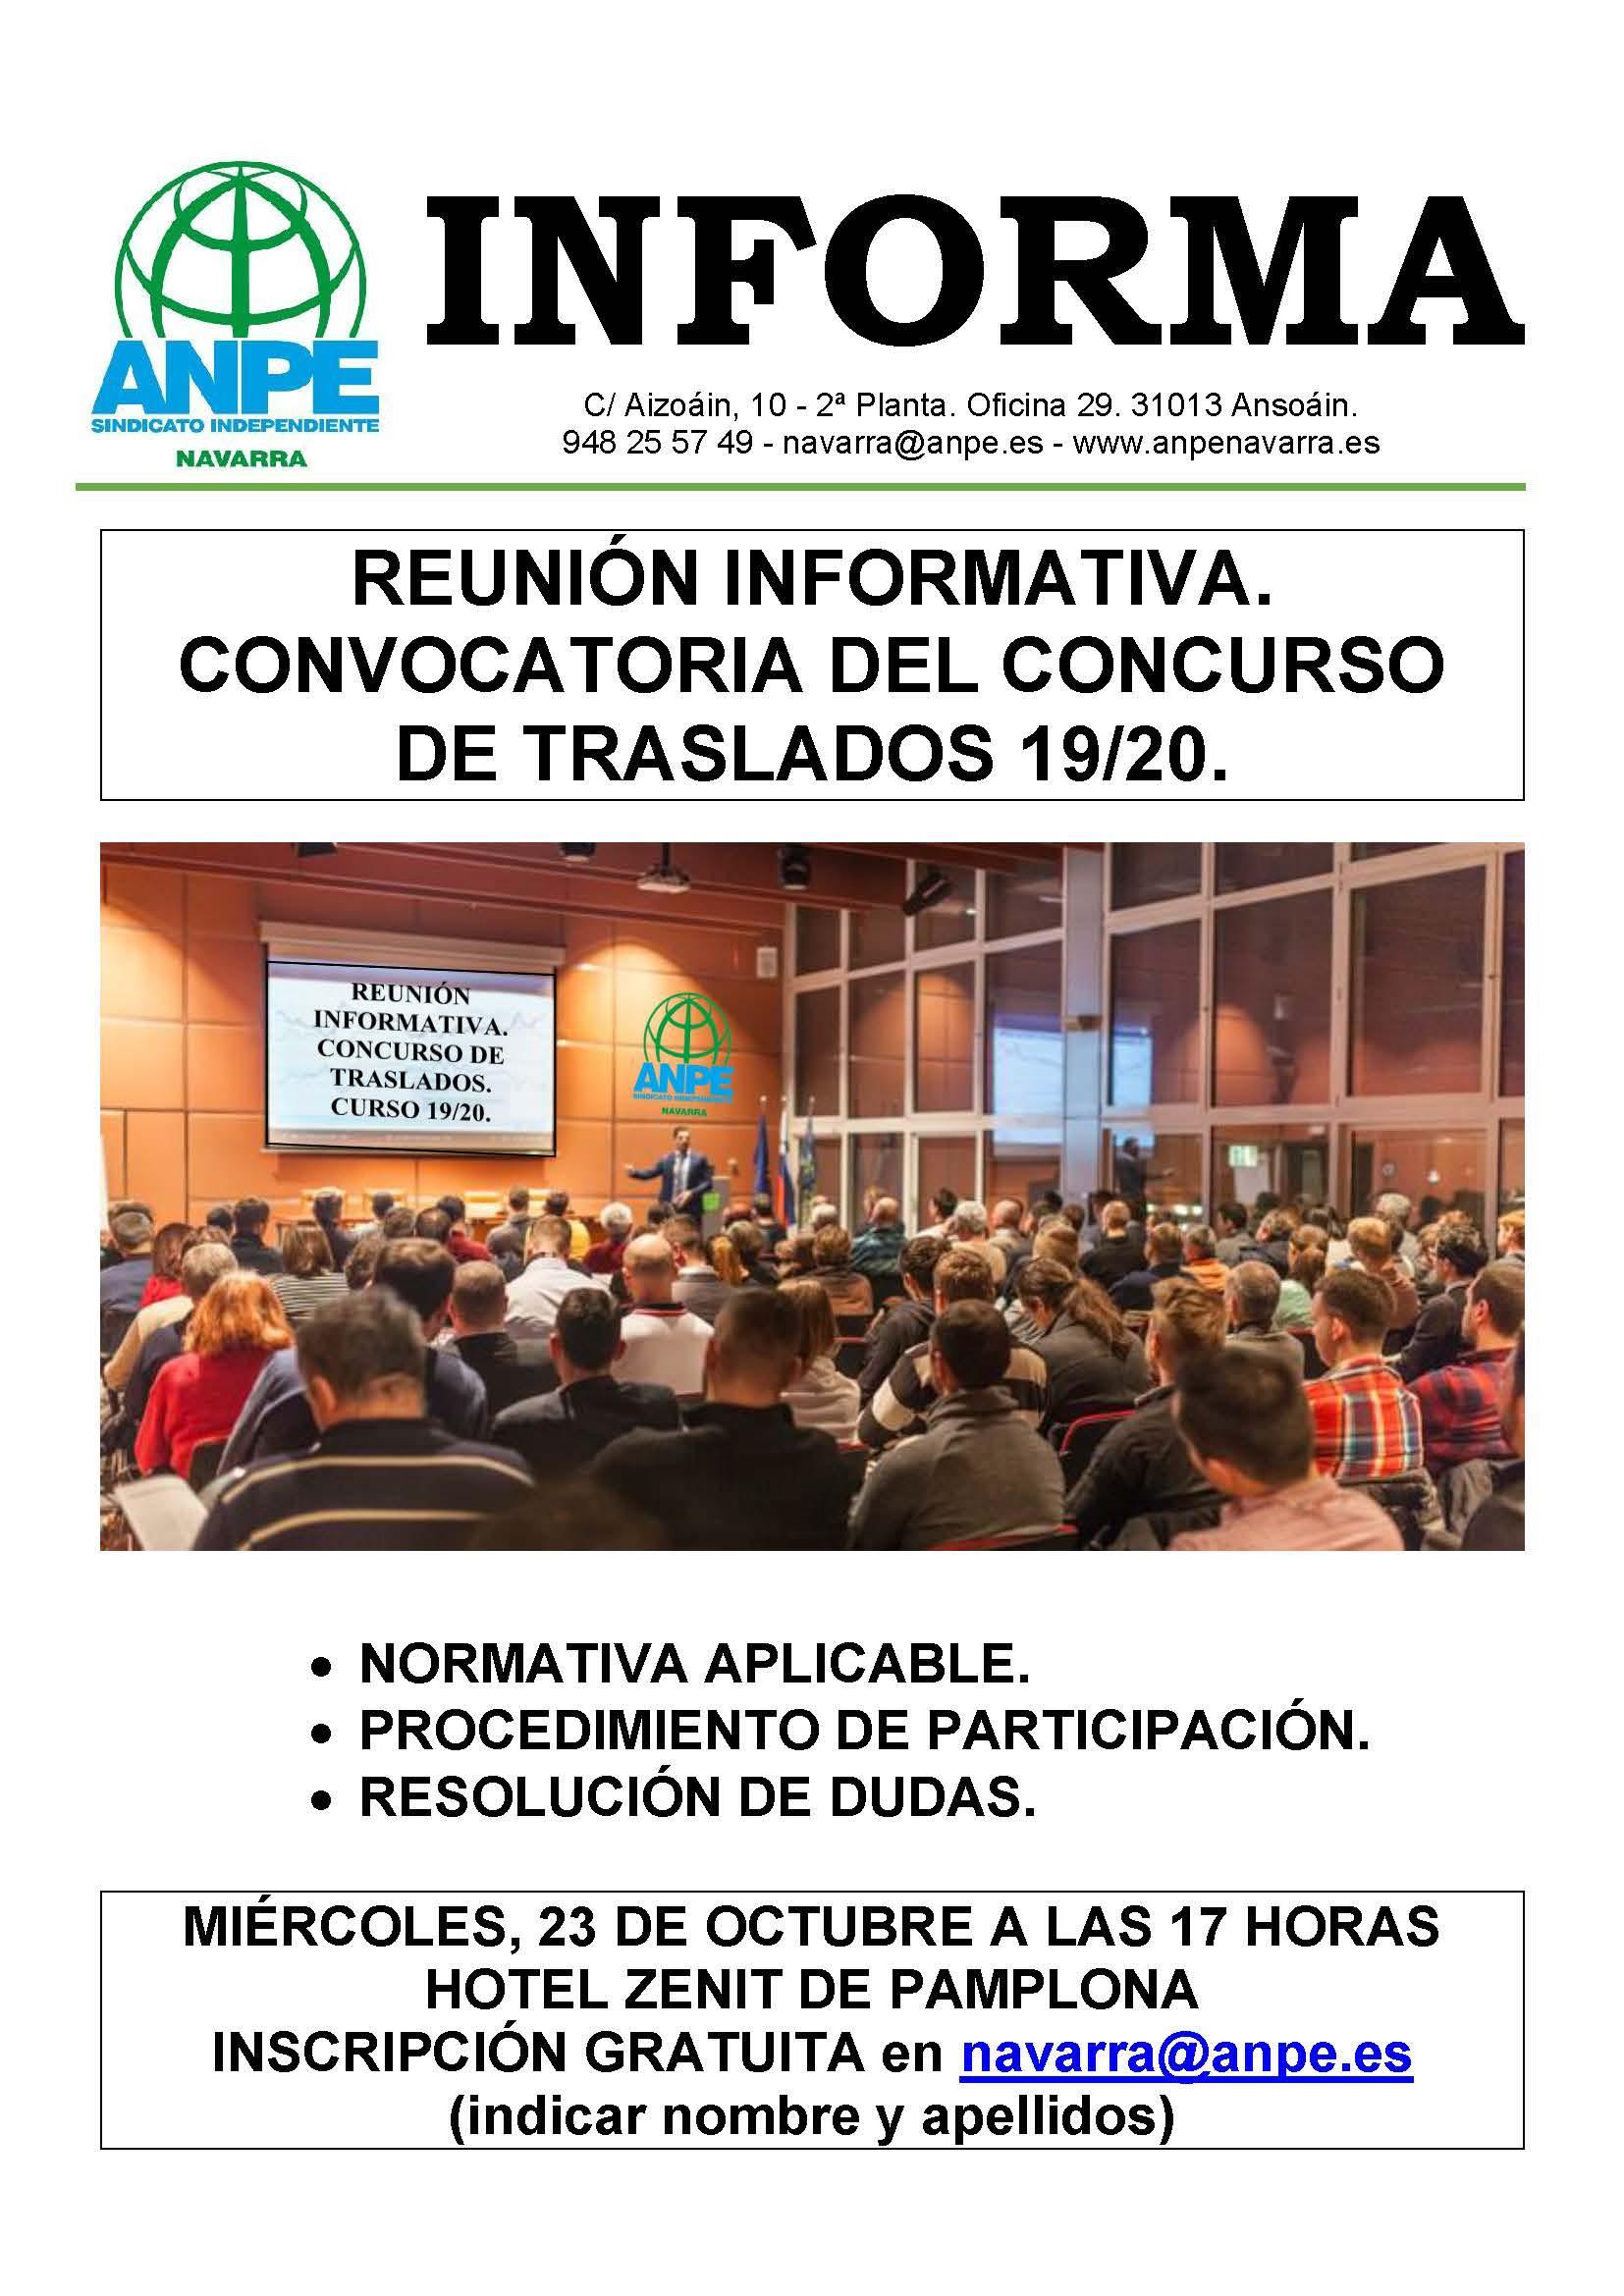 anpe-informa-reunion-concurso-traslados